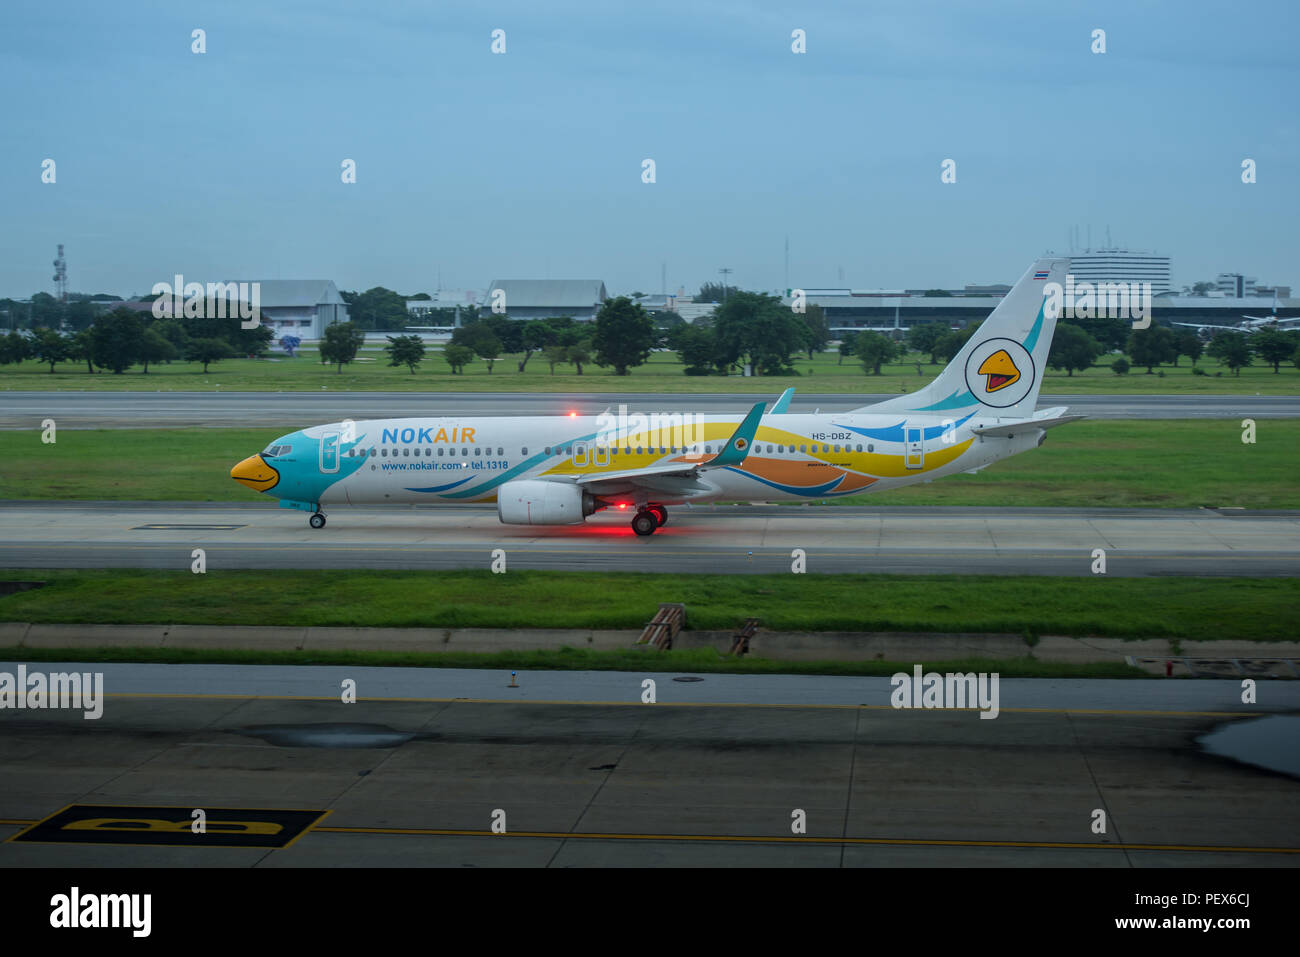 Bangkok, Thailand, 13th Aug 2018: Nok Air Reg. no. HS-DBZ B737 taxiing at Donmuang Airport Stock Photo